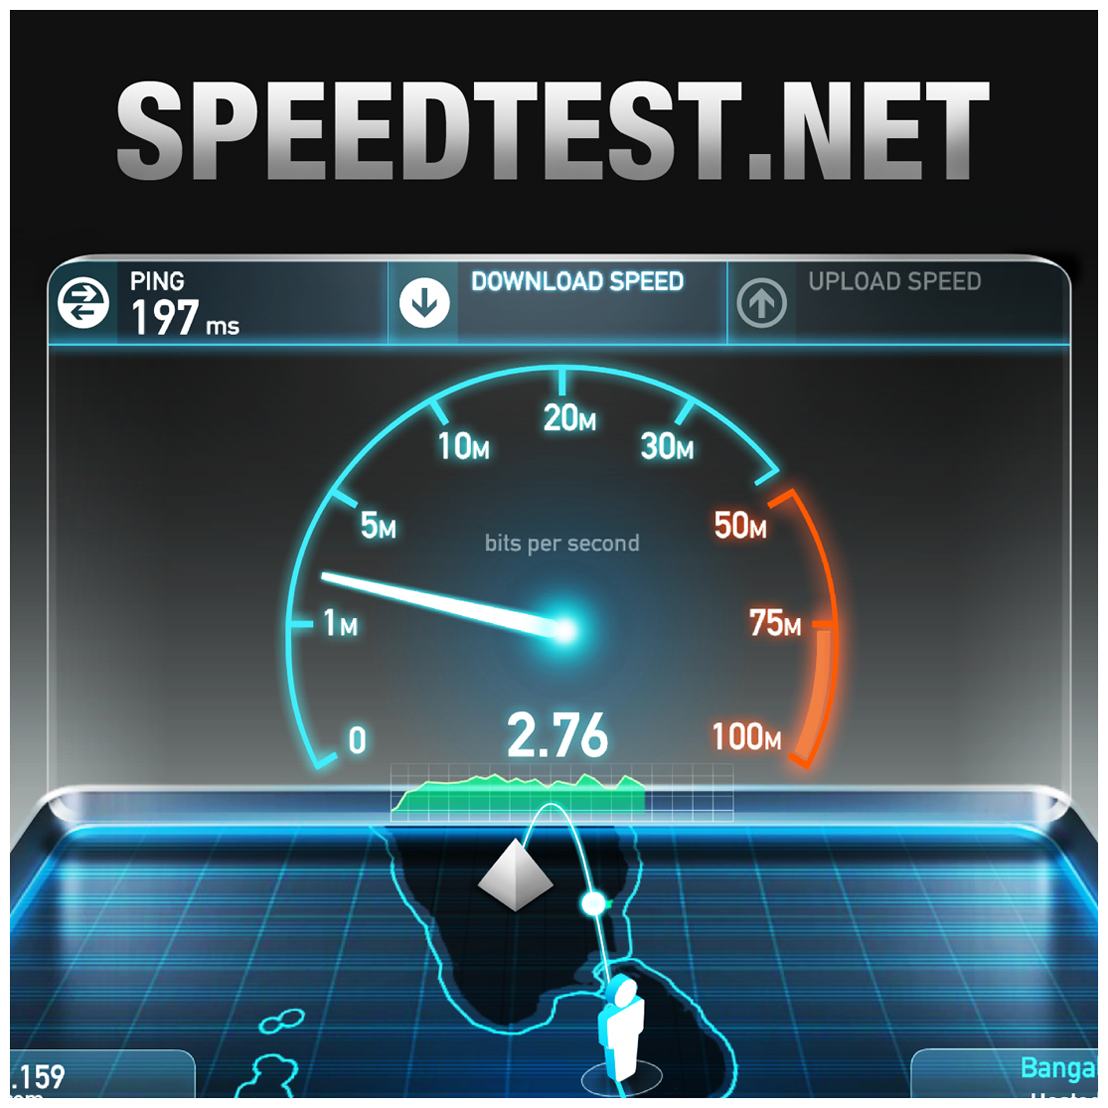 Измерь скорость интернета на моем телефоне. Спидтест. Тест скорости интернета. Speedtest.net. Спидтест скорости интернета.